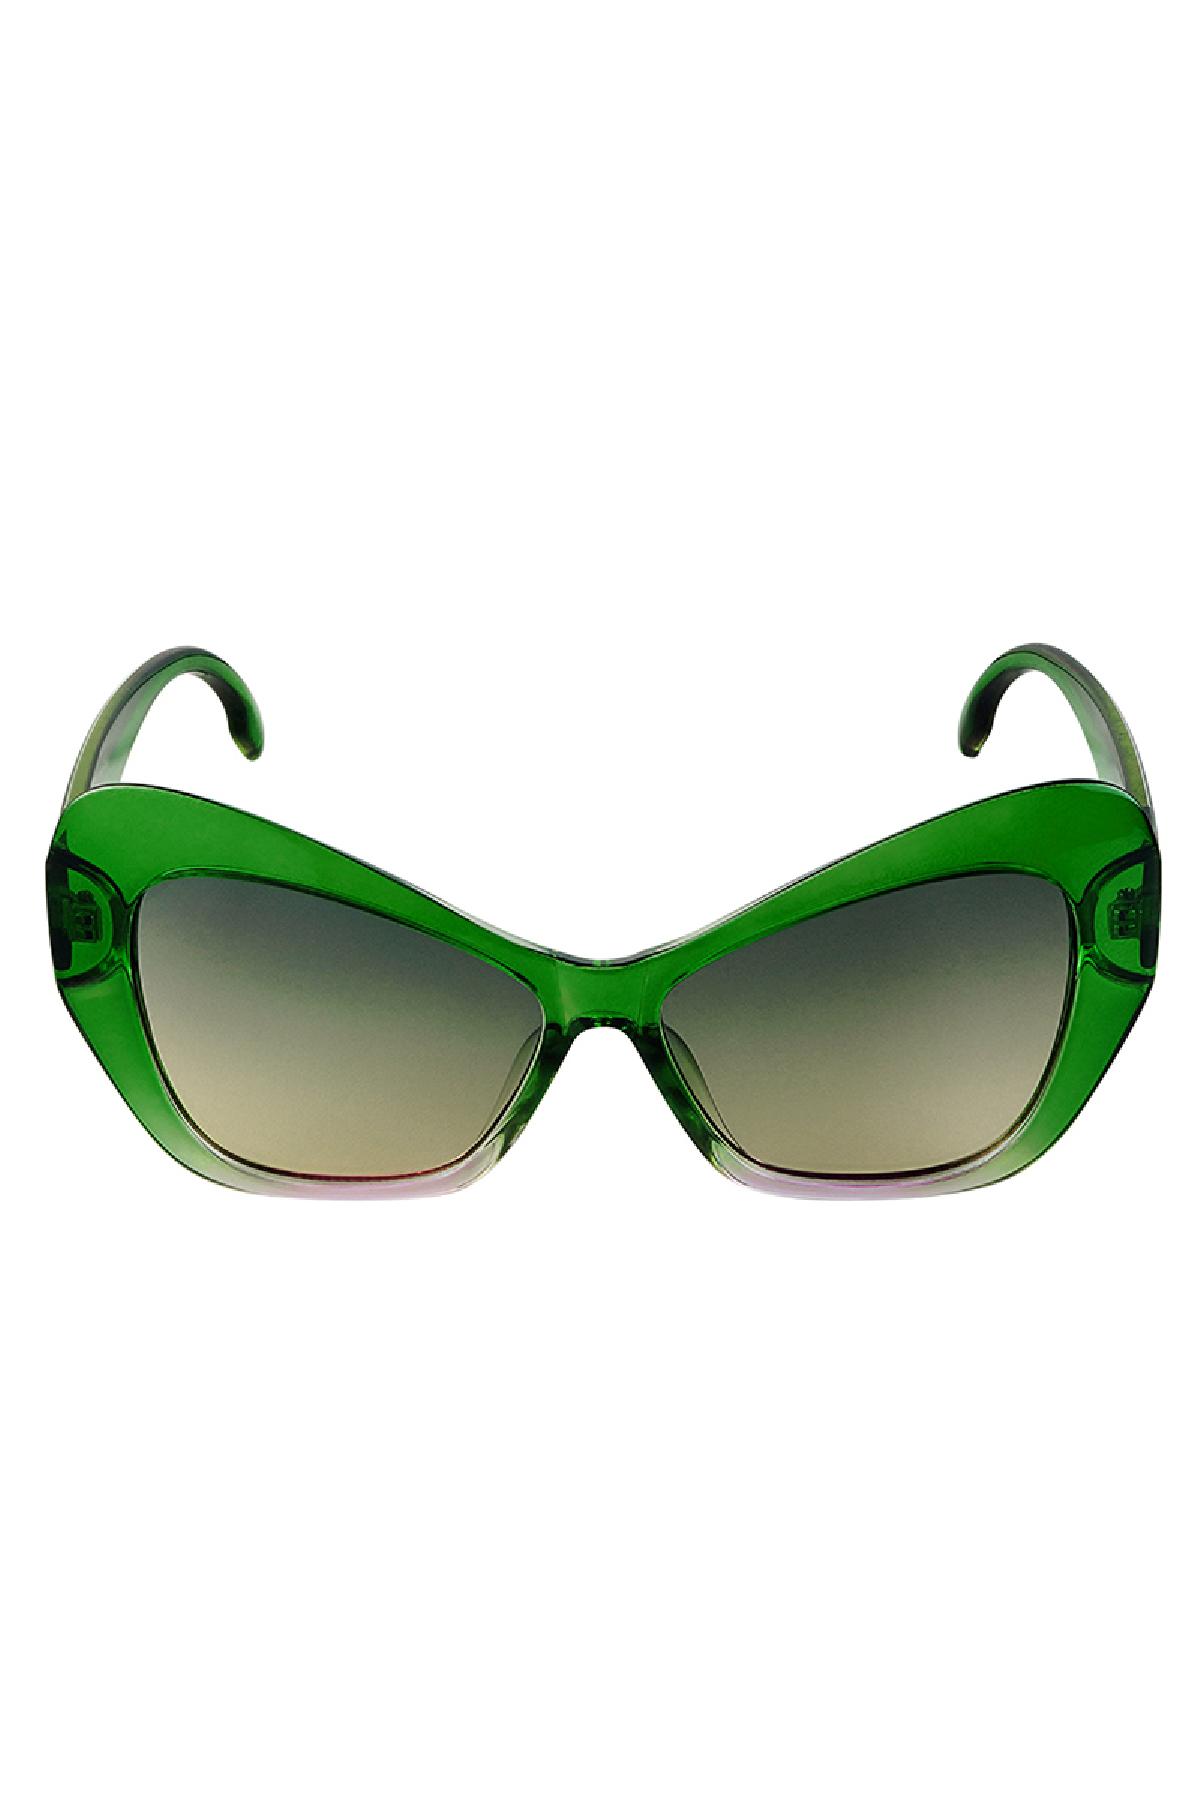 Dichiarazione sugli occhiali da sole Green PC One size h5 Immagine3